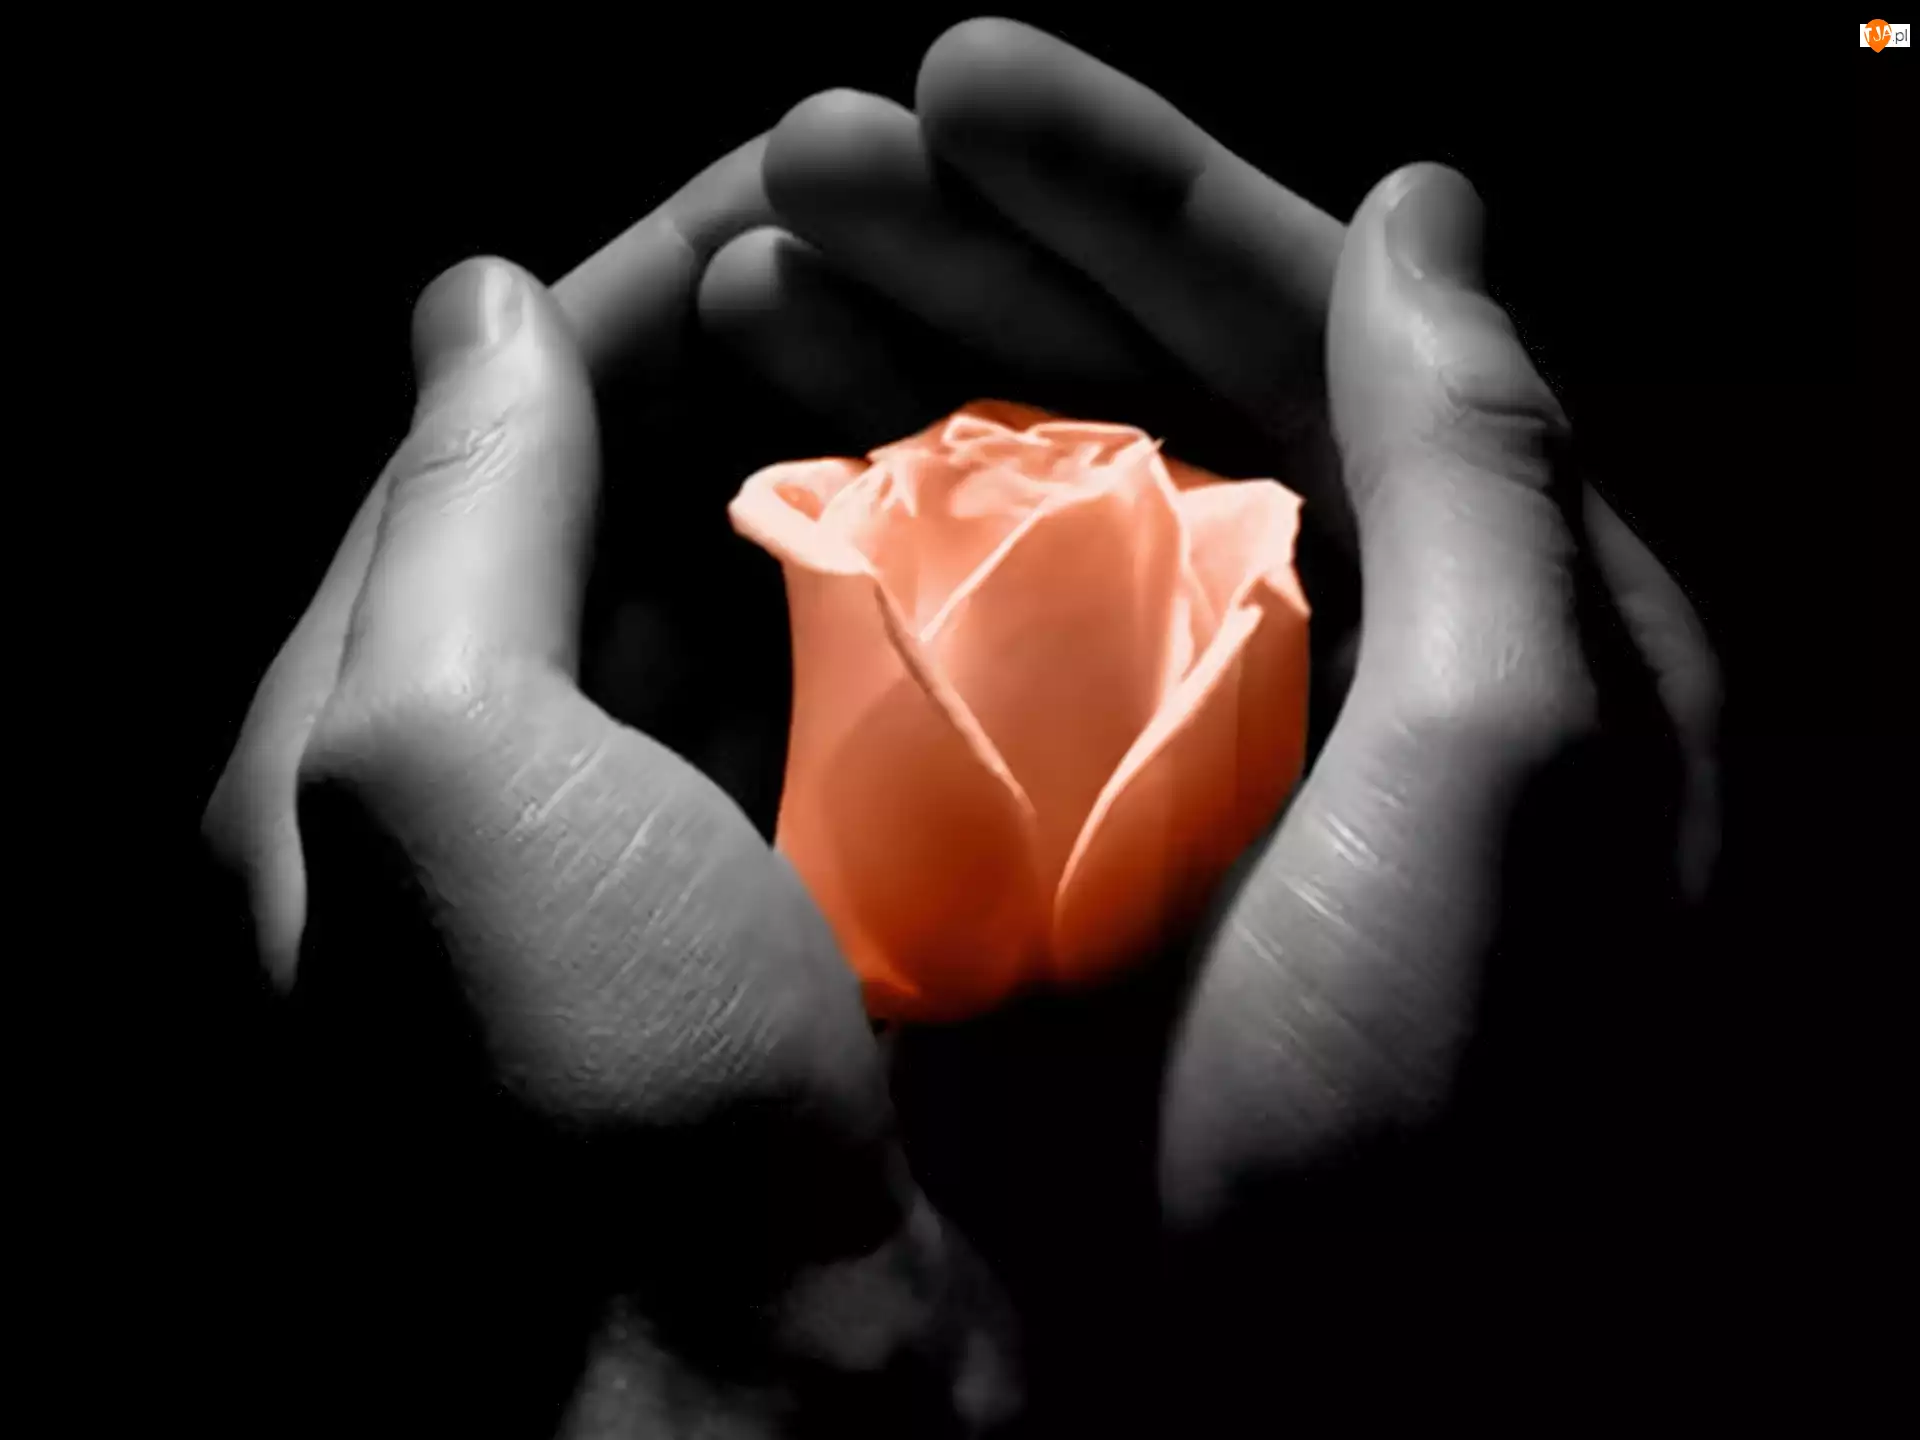 Dłonie, Róża